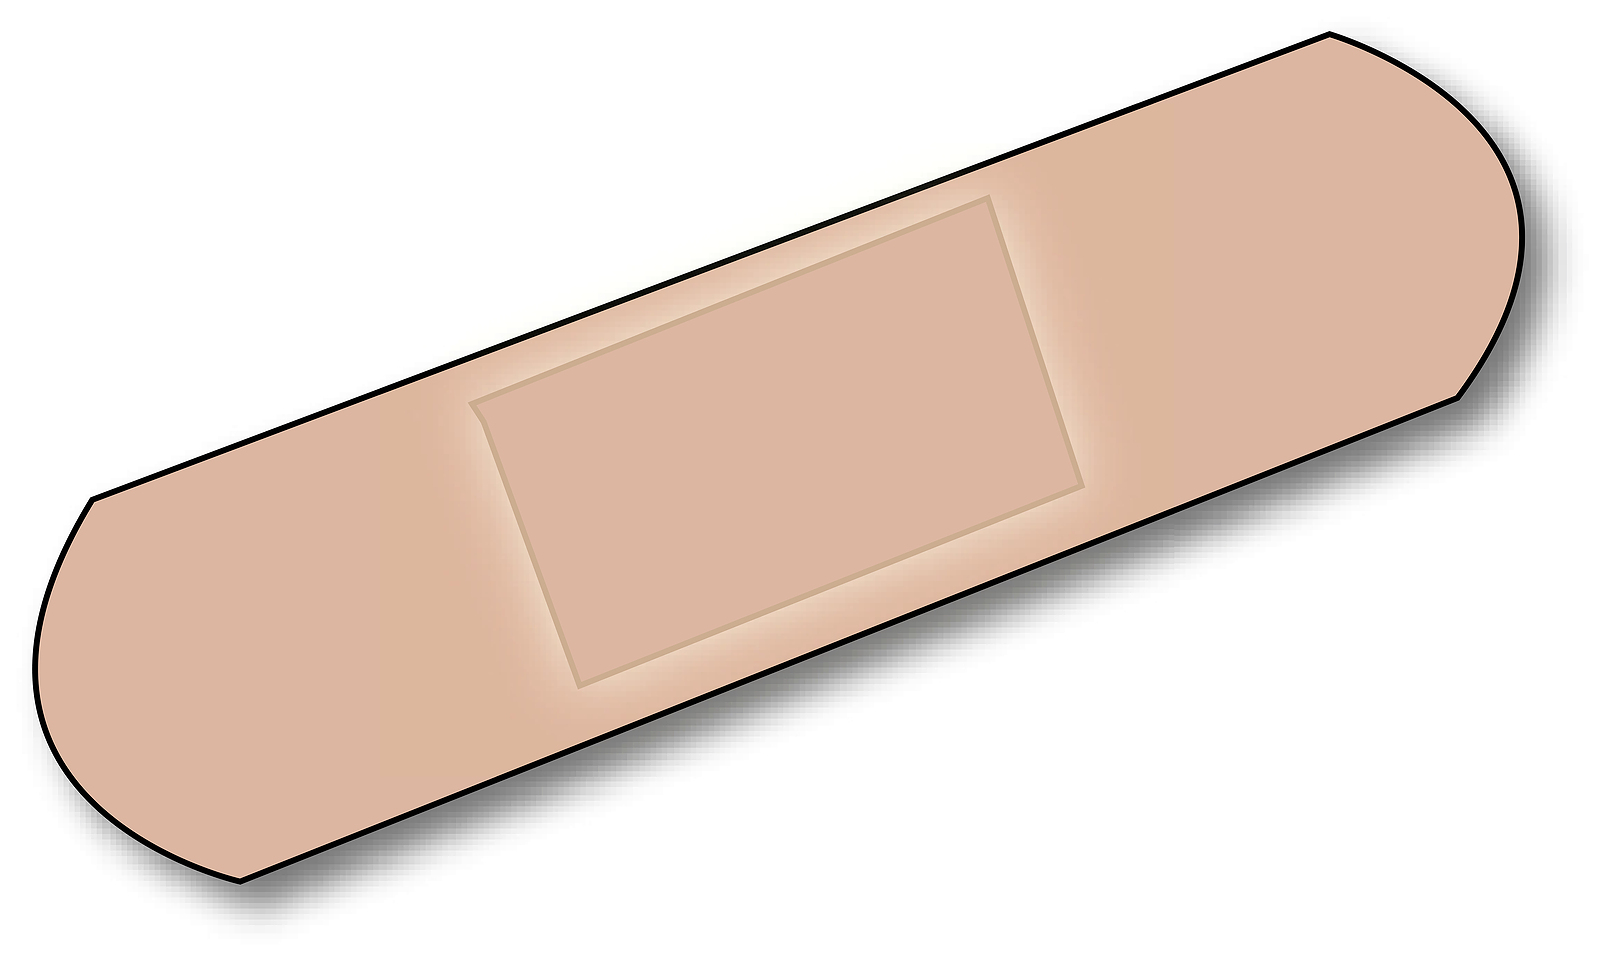 Band-aid Clipart